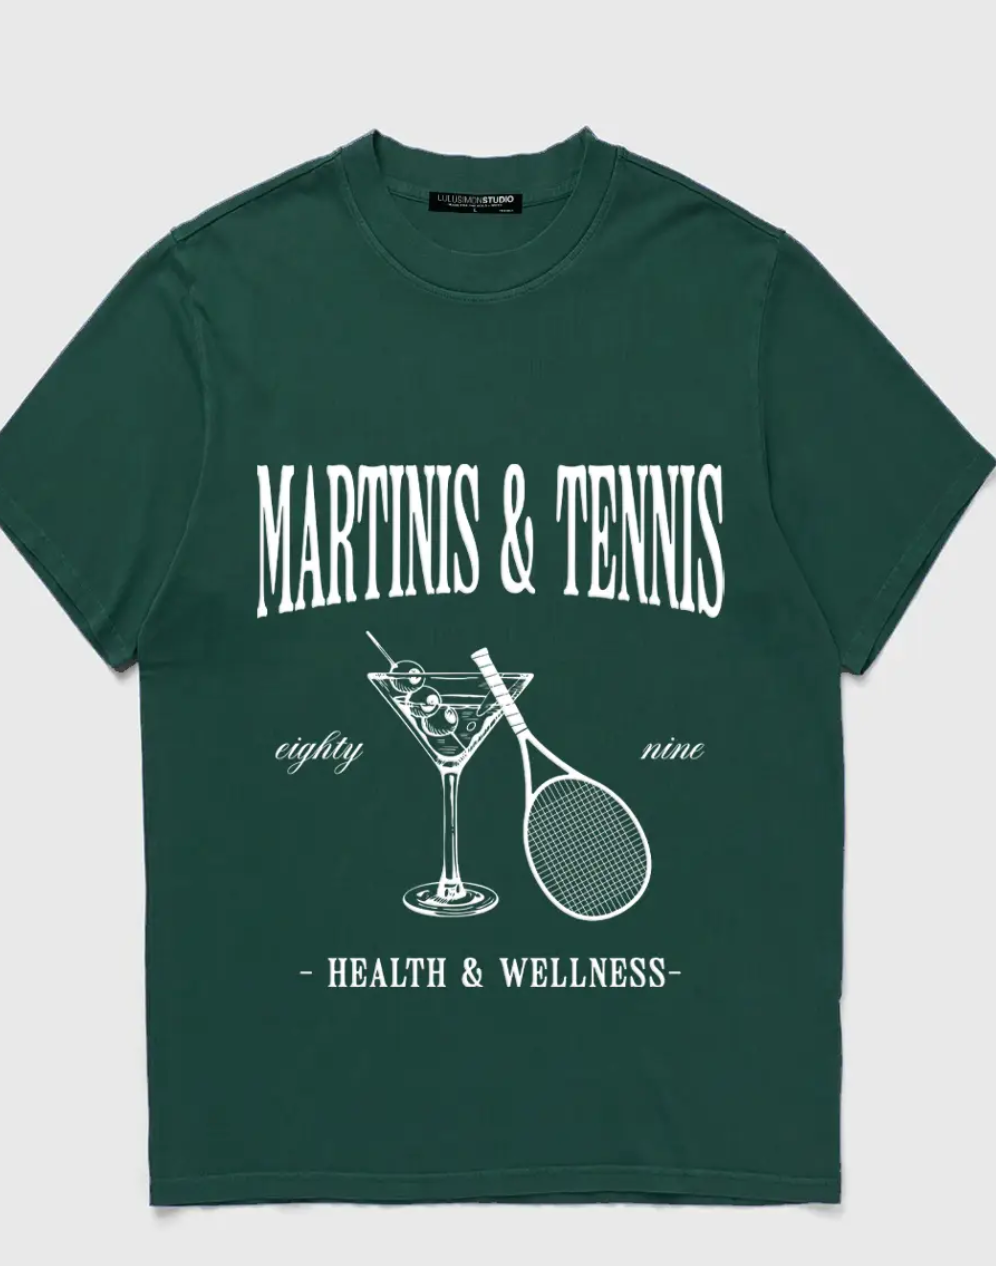 Martinis & Tennis Garment Dye Tee